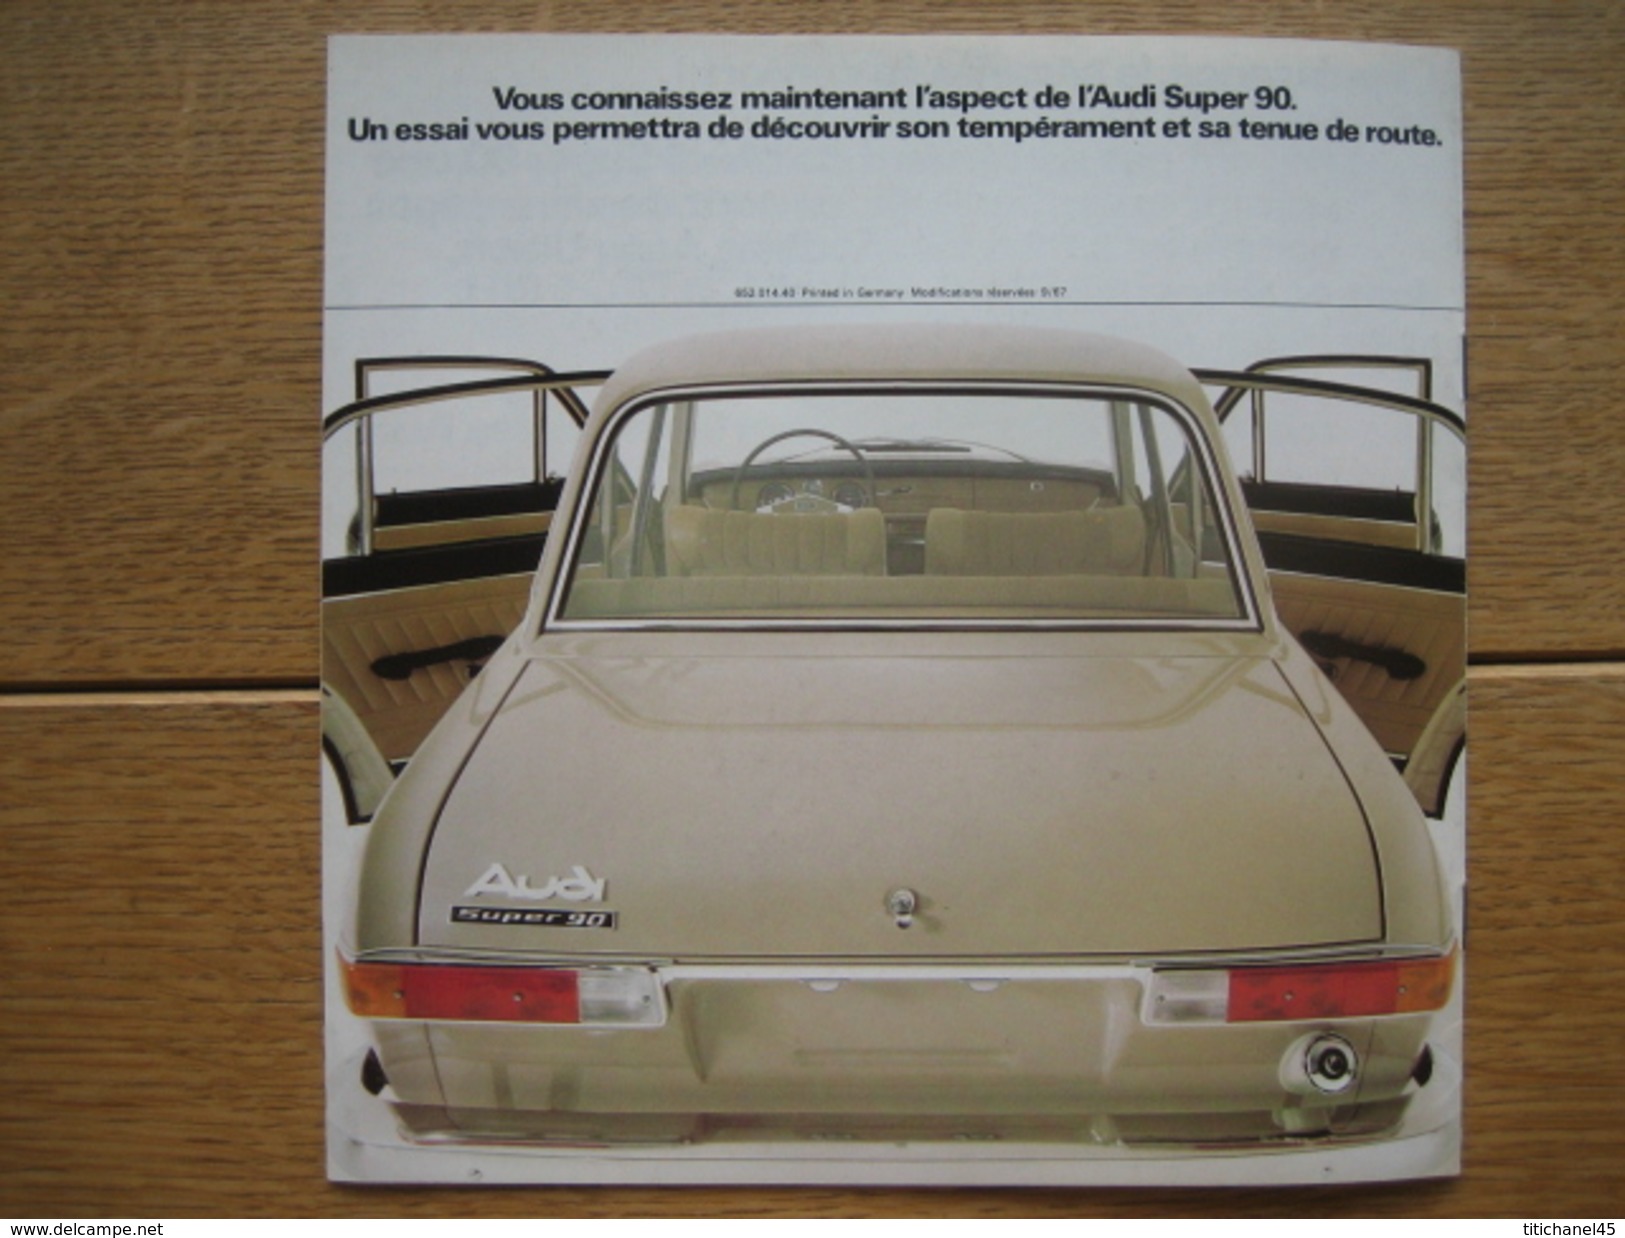 Catalogue publicitaire de 1967 automobile AUDI SUPER 90 - 12 pages